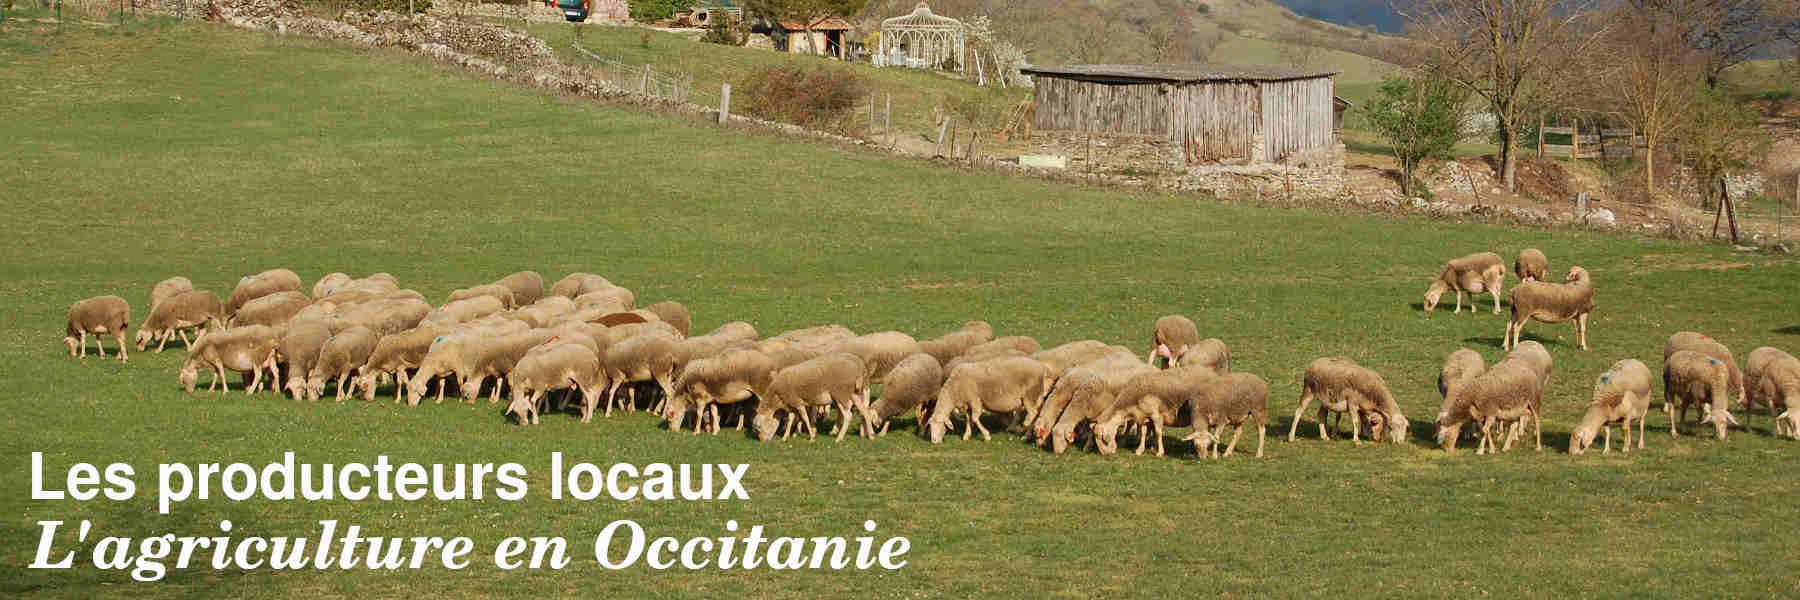 Les producteurs locaux en Occitanie